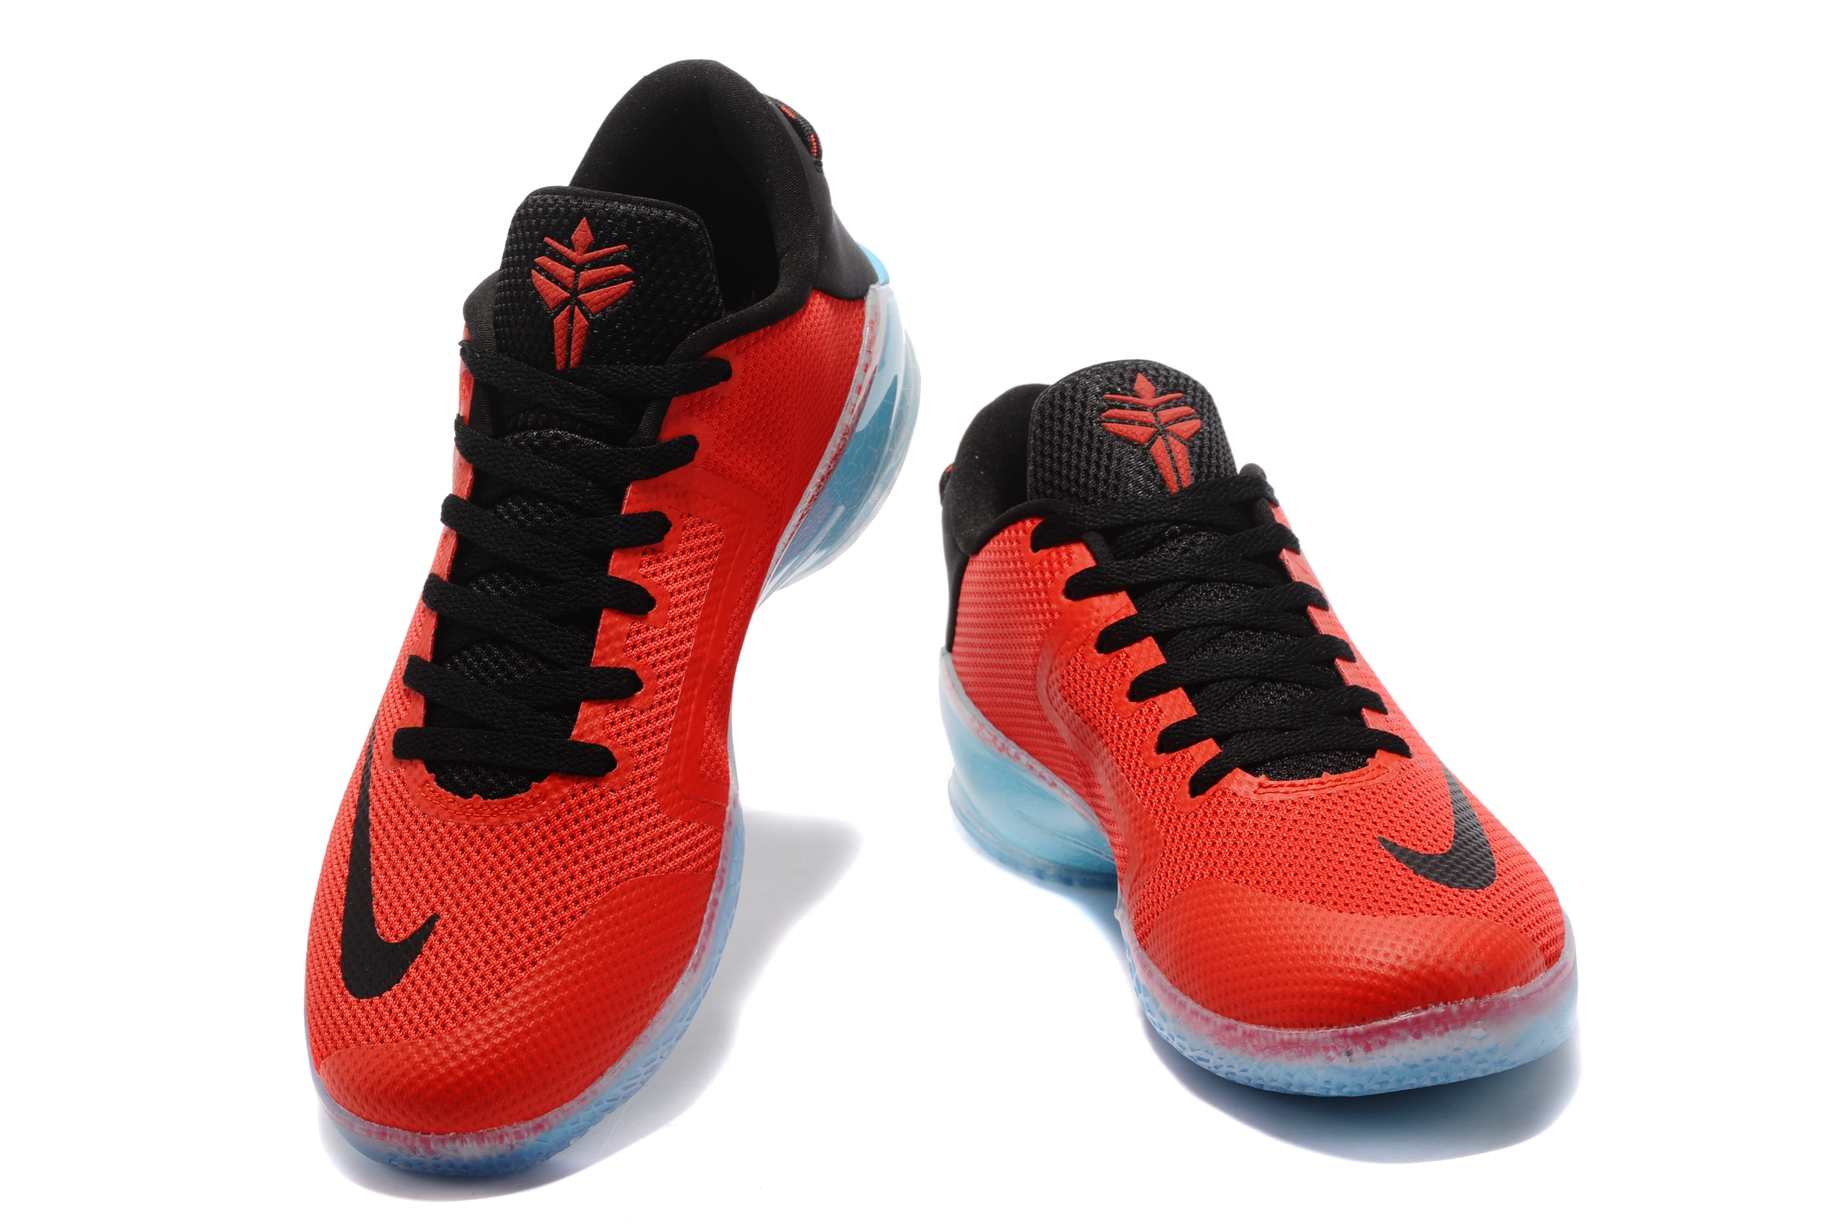 Zoom Kobe Venomenon VI Men Basketball Shoes arizona Red Black - StclaircomoShops - suicoke boak v touch strap sandals item